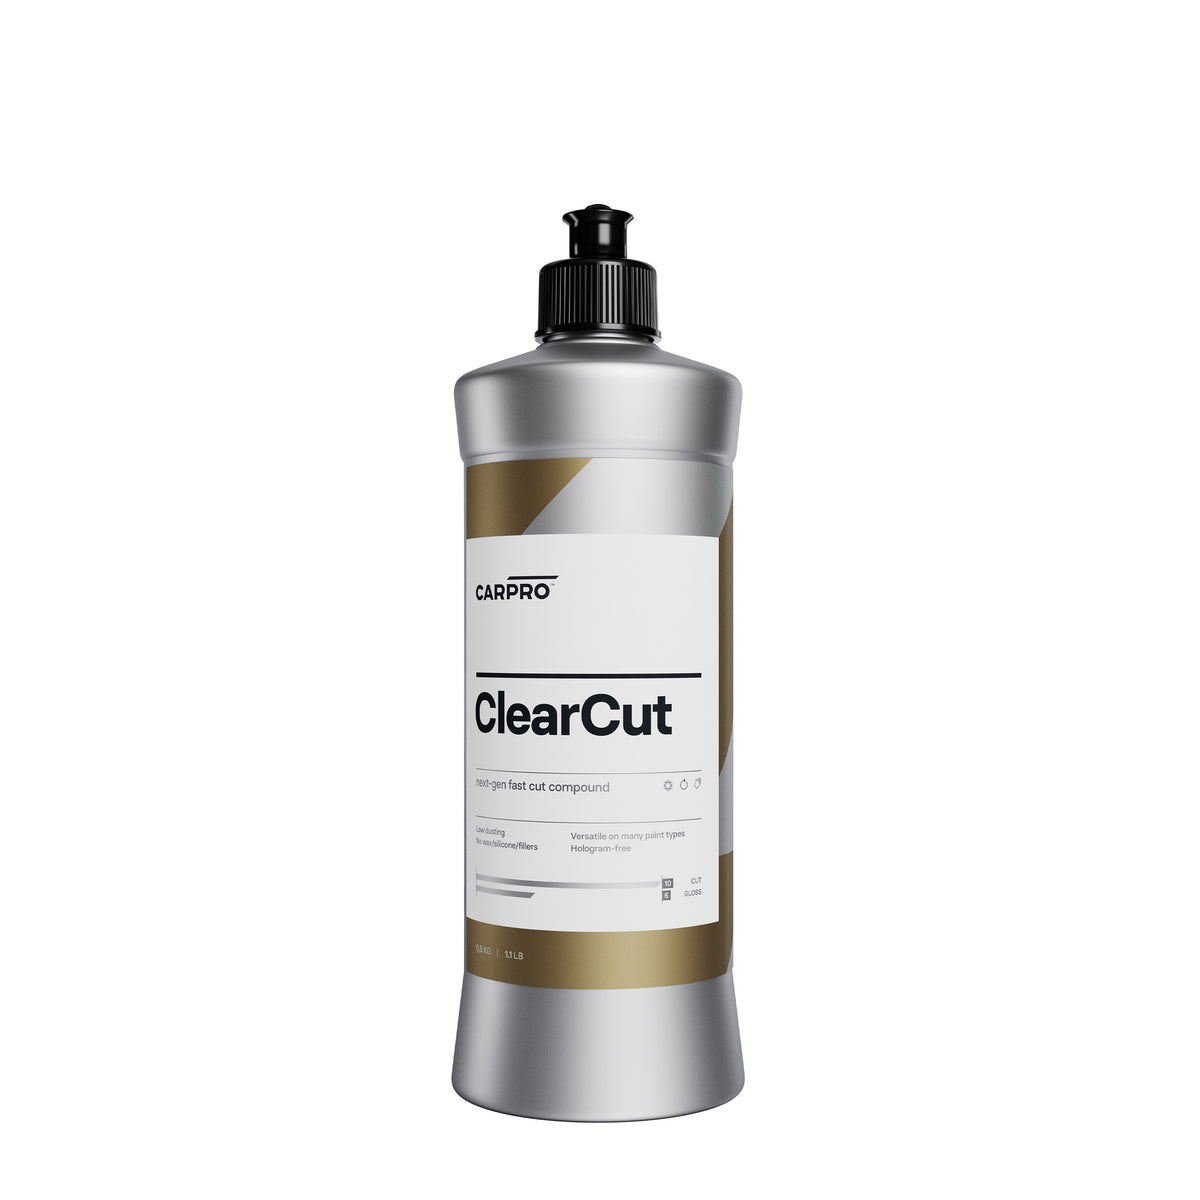  Bottiglia di CARPRO ClearCut su sfondo bianco, perfetta per rimuovere graffi e imperfezioni durante la lucidatura dei veicoli.